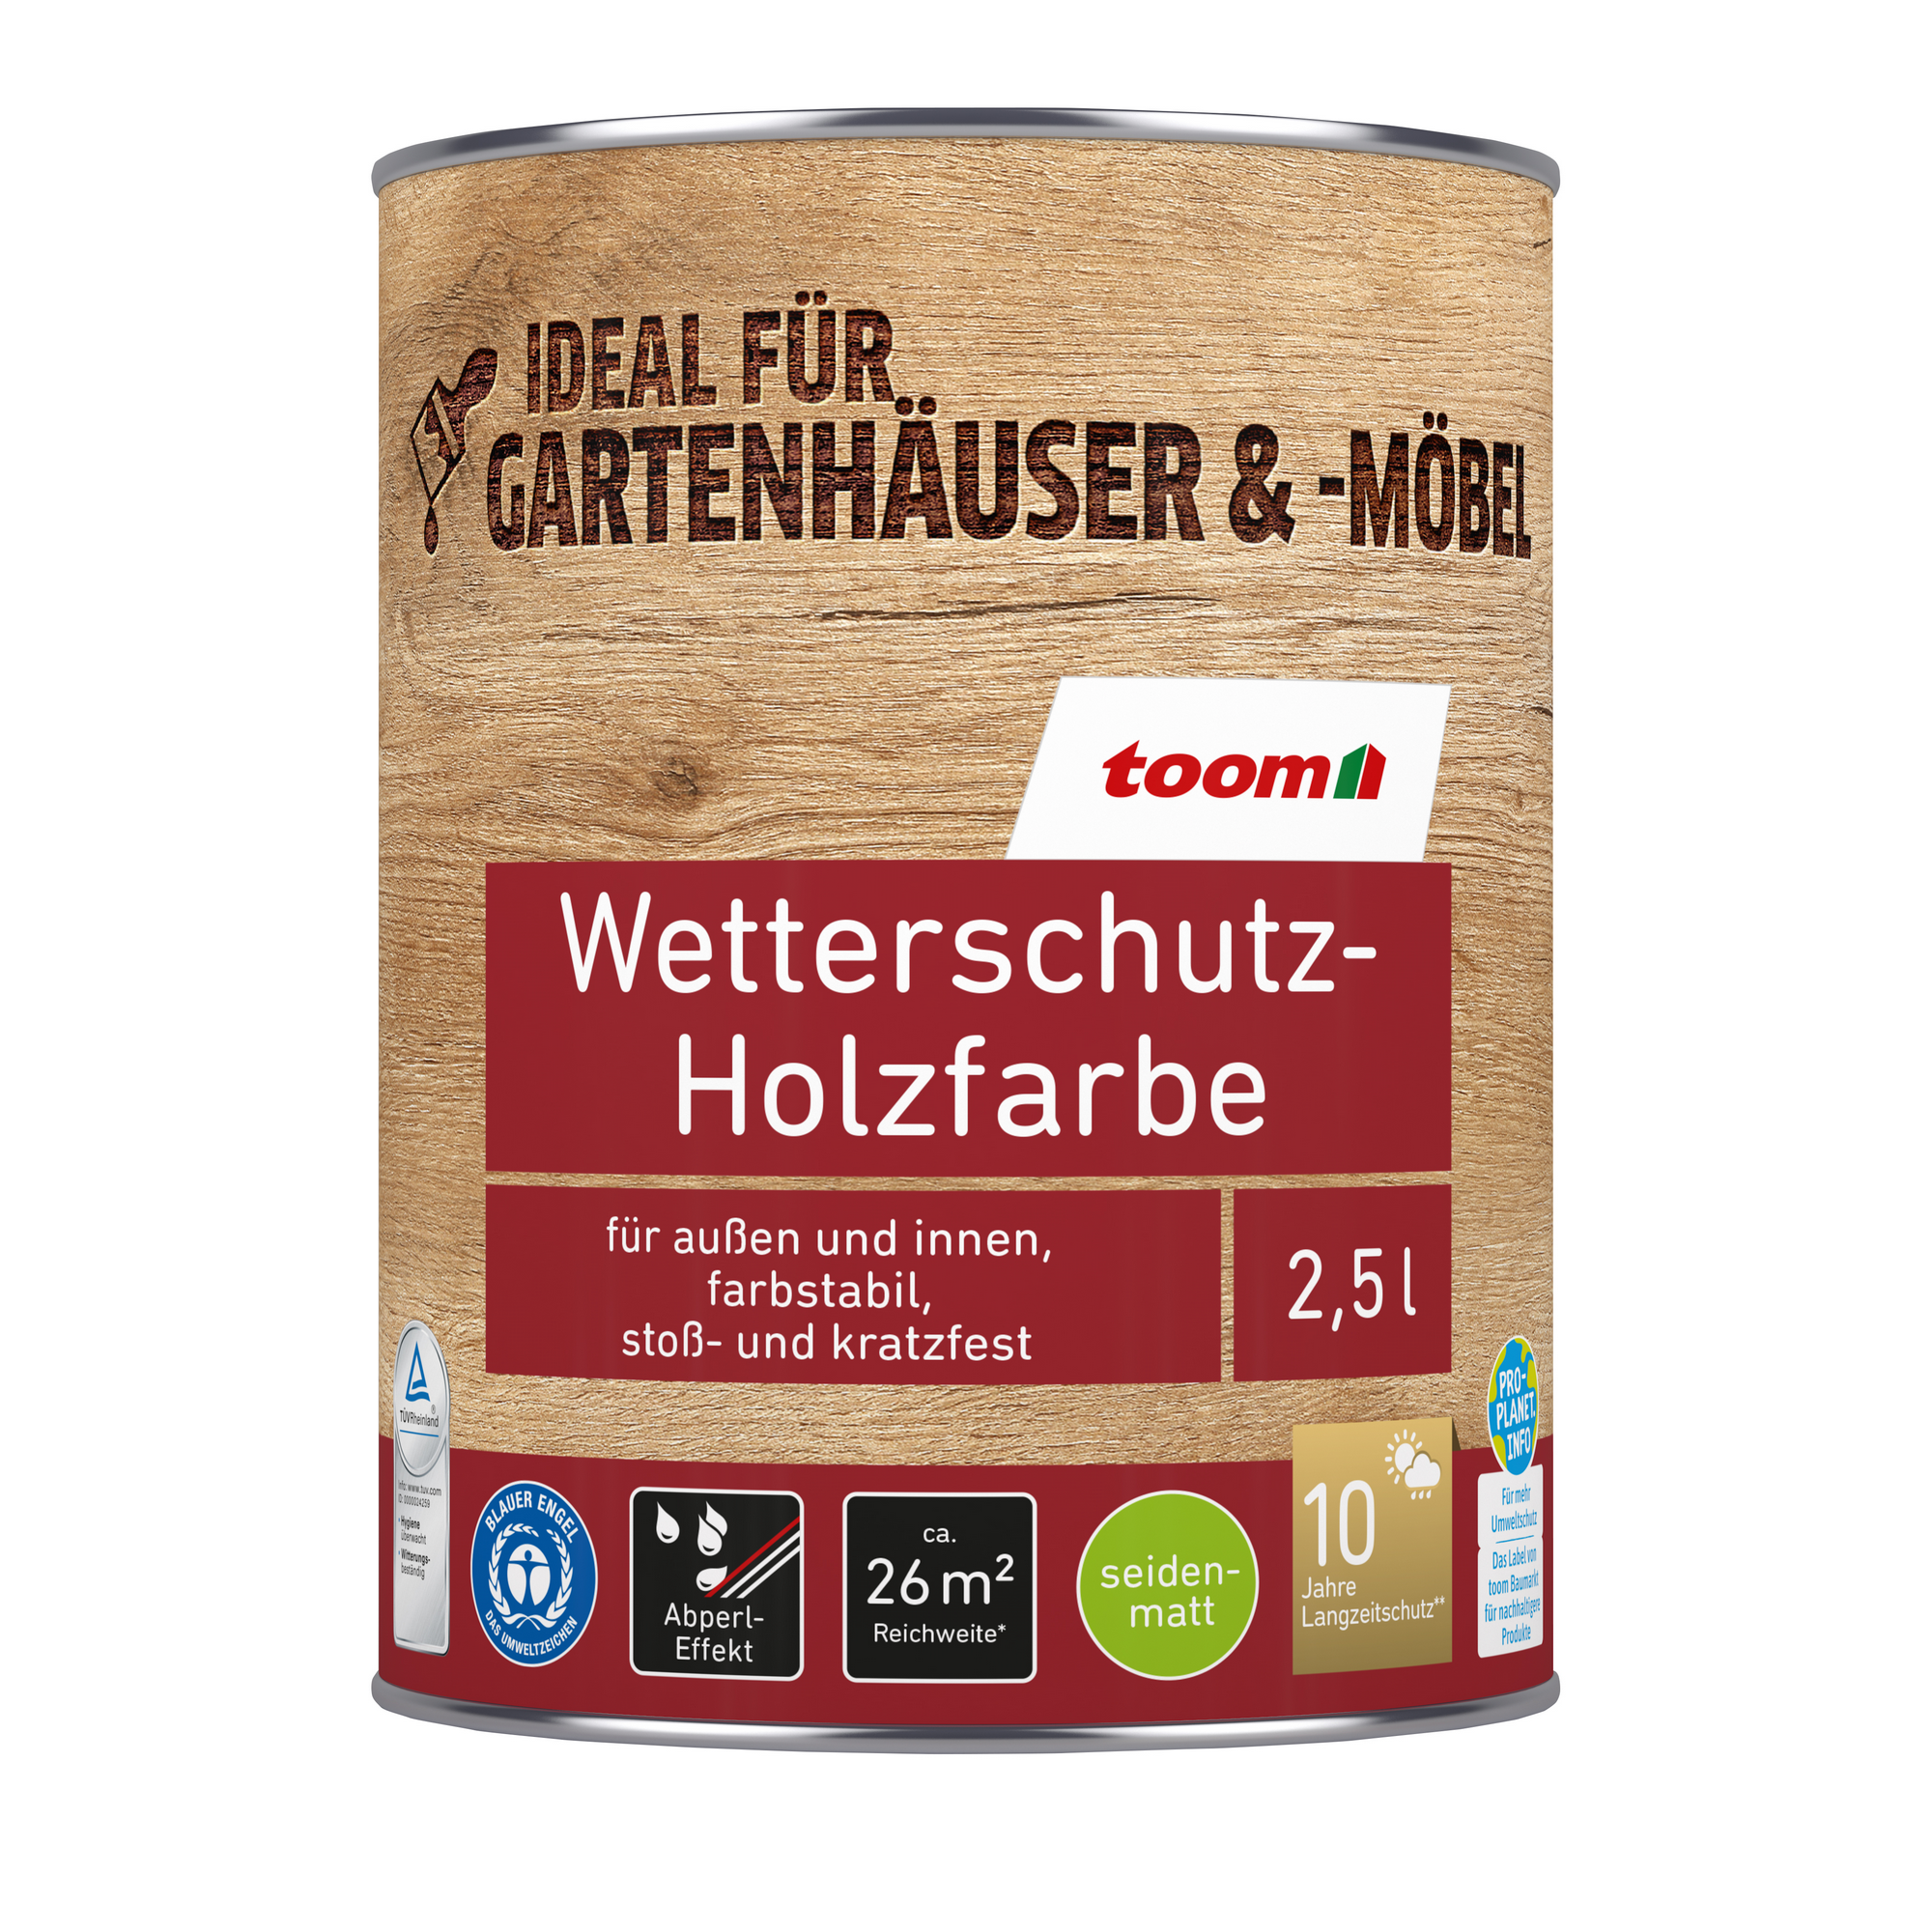 Wetterschutz-Holzfarbe elfenbeinfarben 2,5 l + product picture